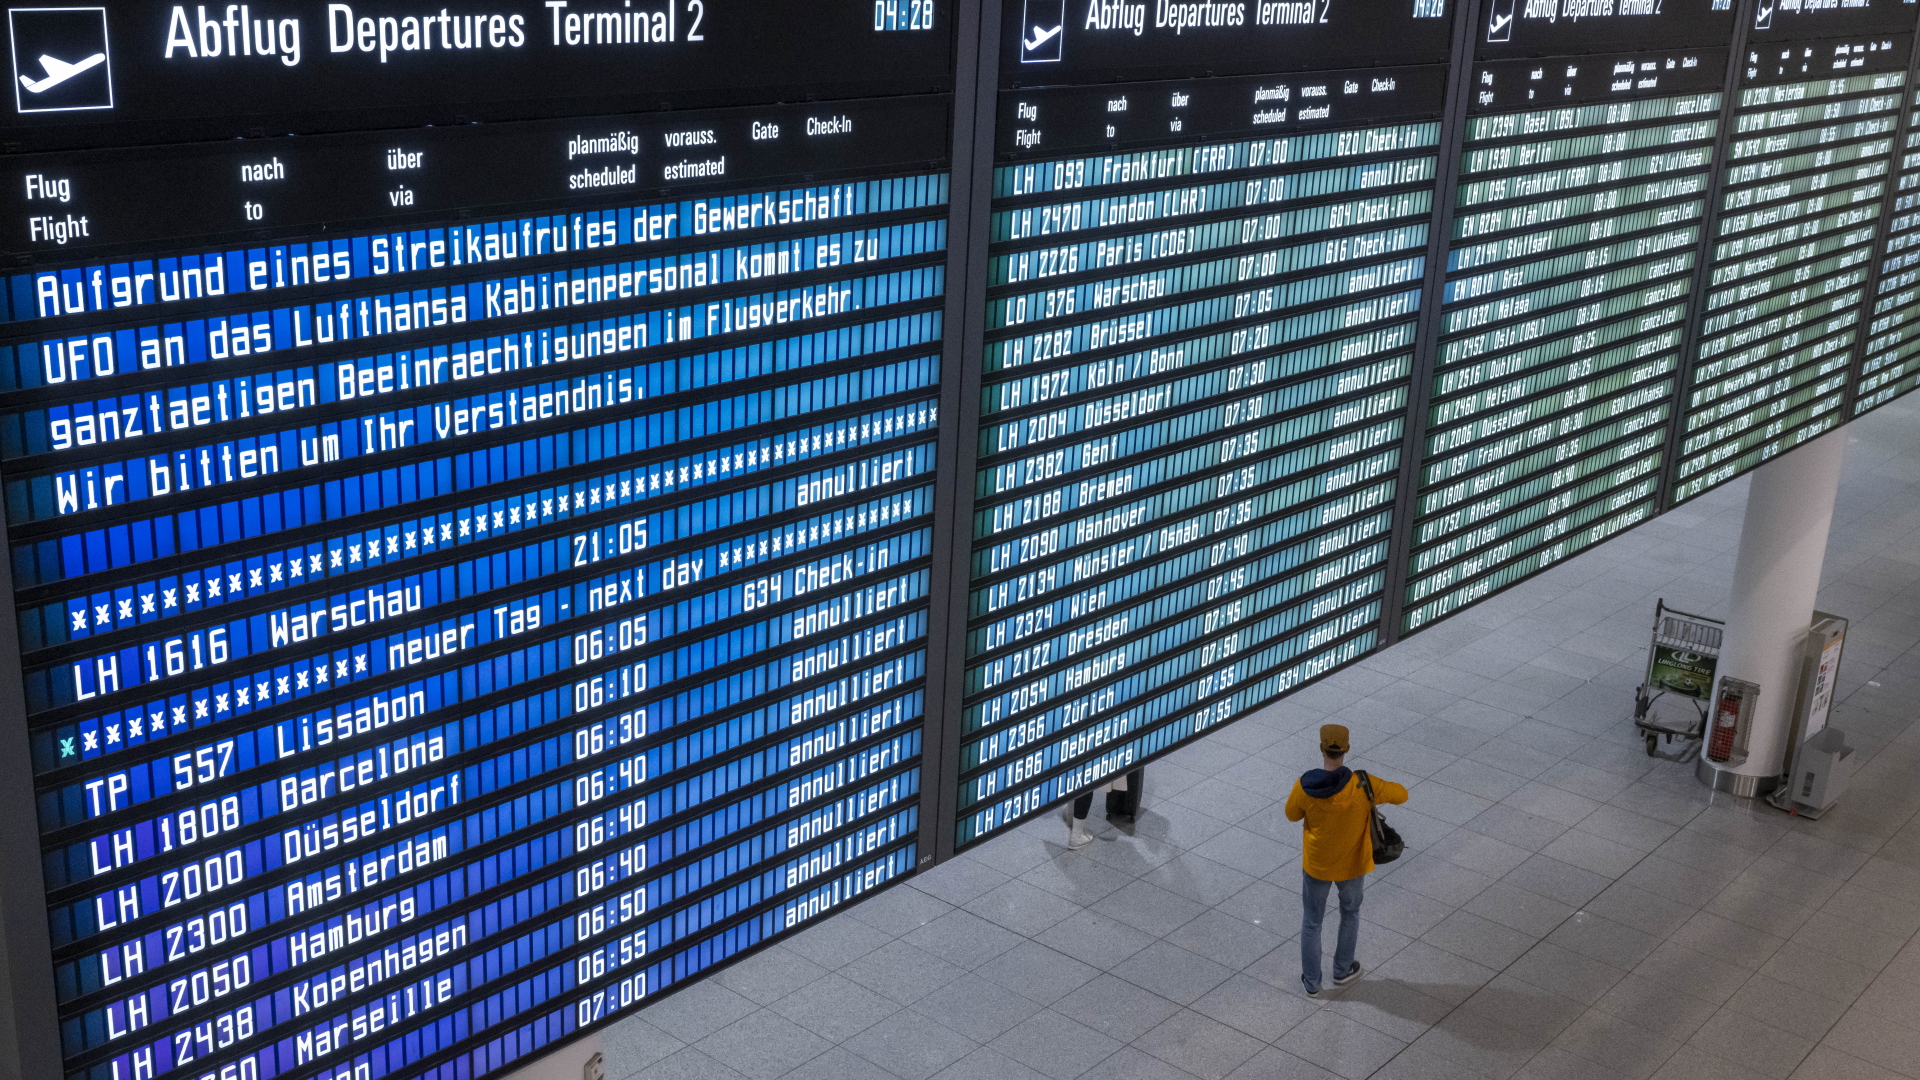 Eine Anzeigetafel am Flughafen München zeigt den Text "Aufgrund eins Streikaufrufes der Gewerkschaft UFO an das Lufthansa Kabinenpersonal kommt es zu ganztägigen Beeinträchtigungen im Flugverkehr. Wir bitten um Ihr Verständnis". 